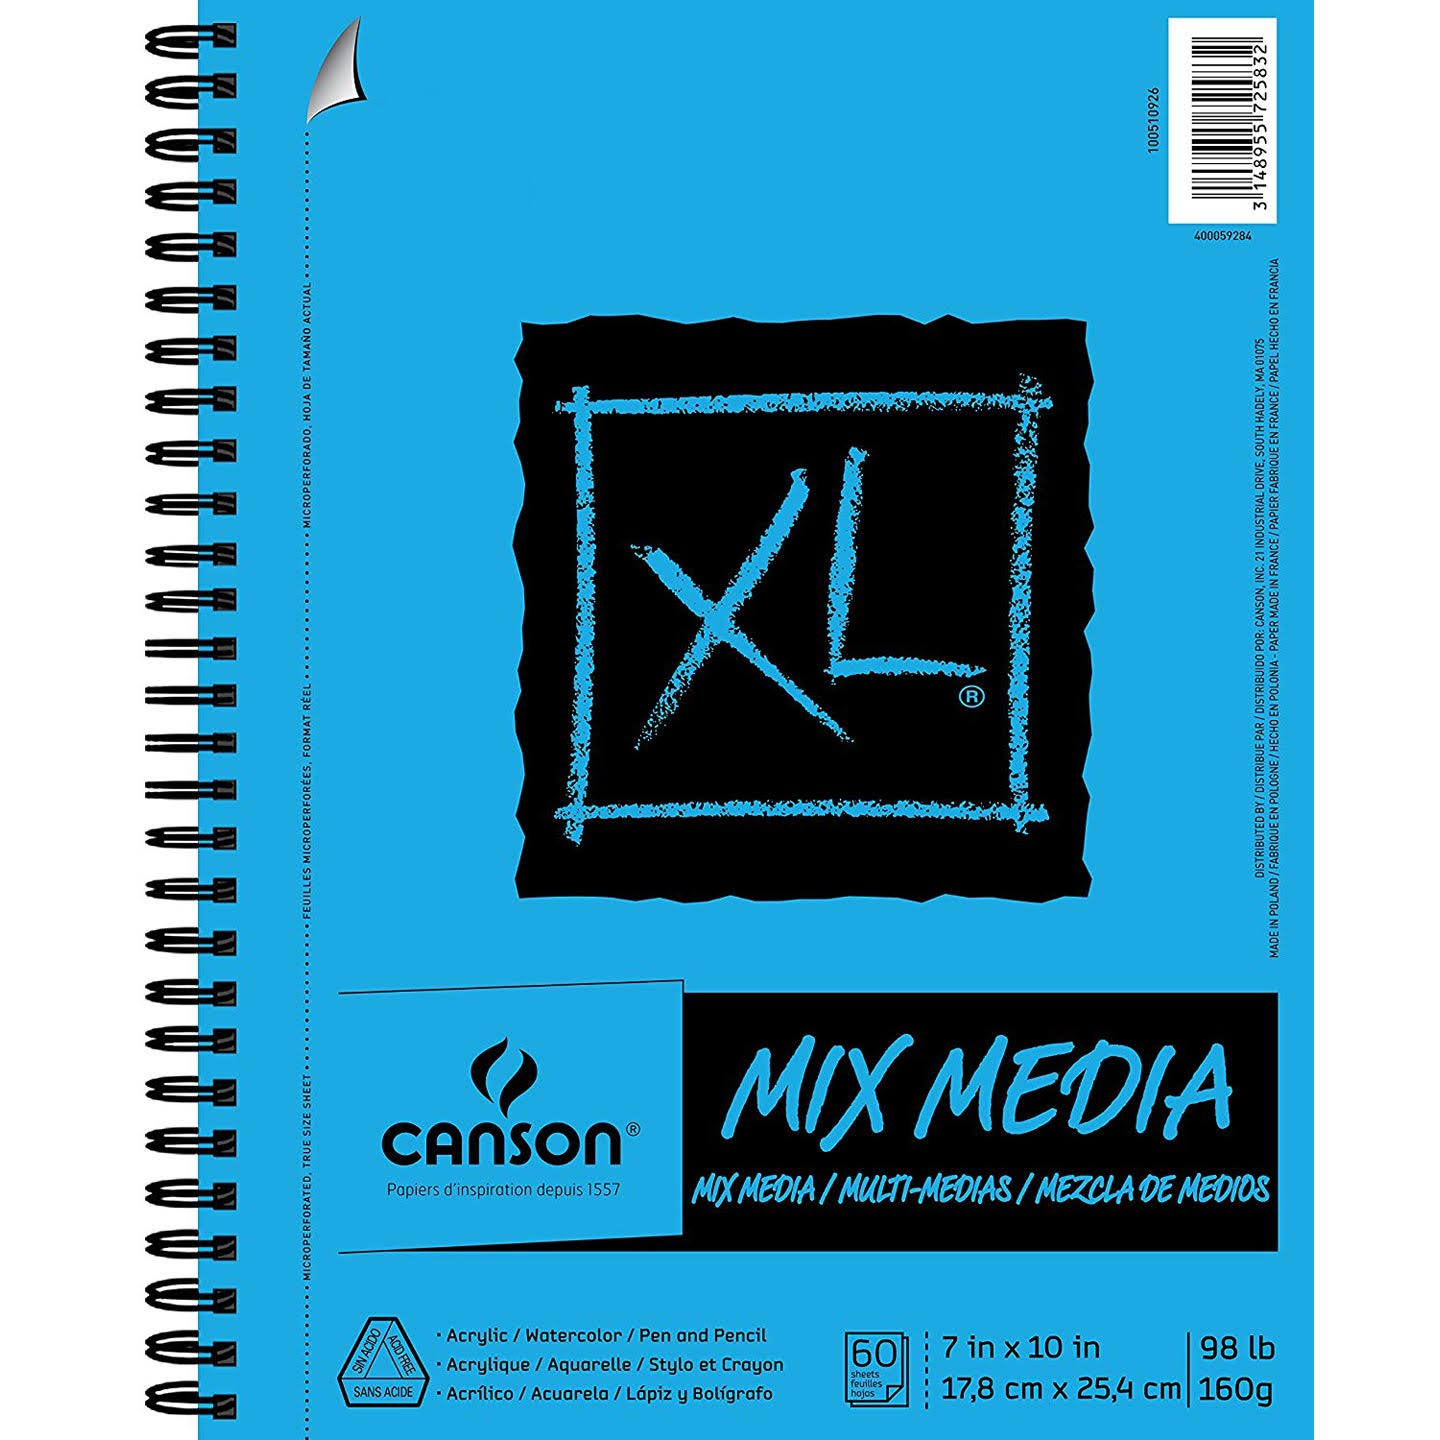 Canson Mix Media Sheet Pad - 60 sheets, 7" x 10"